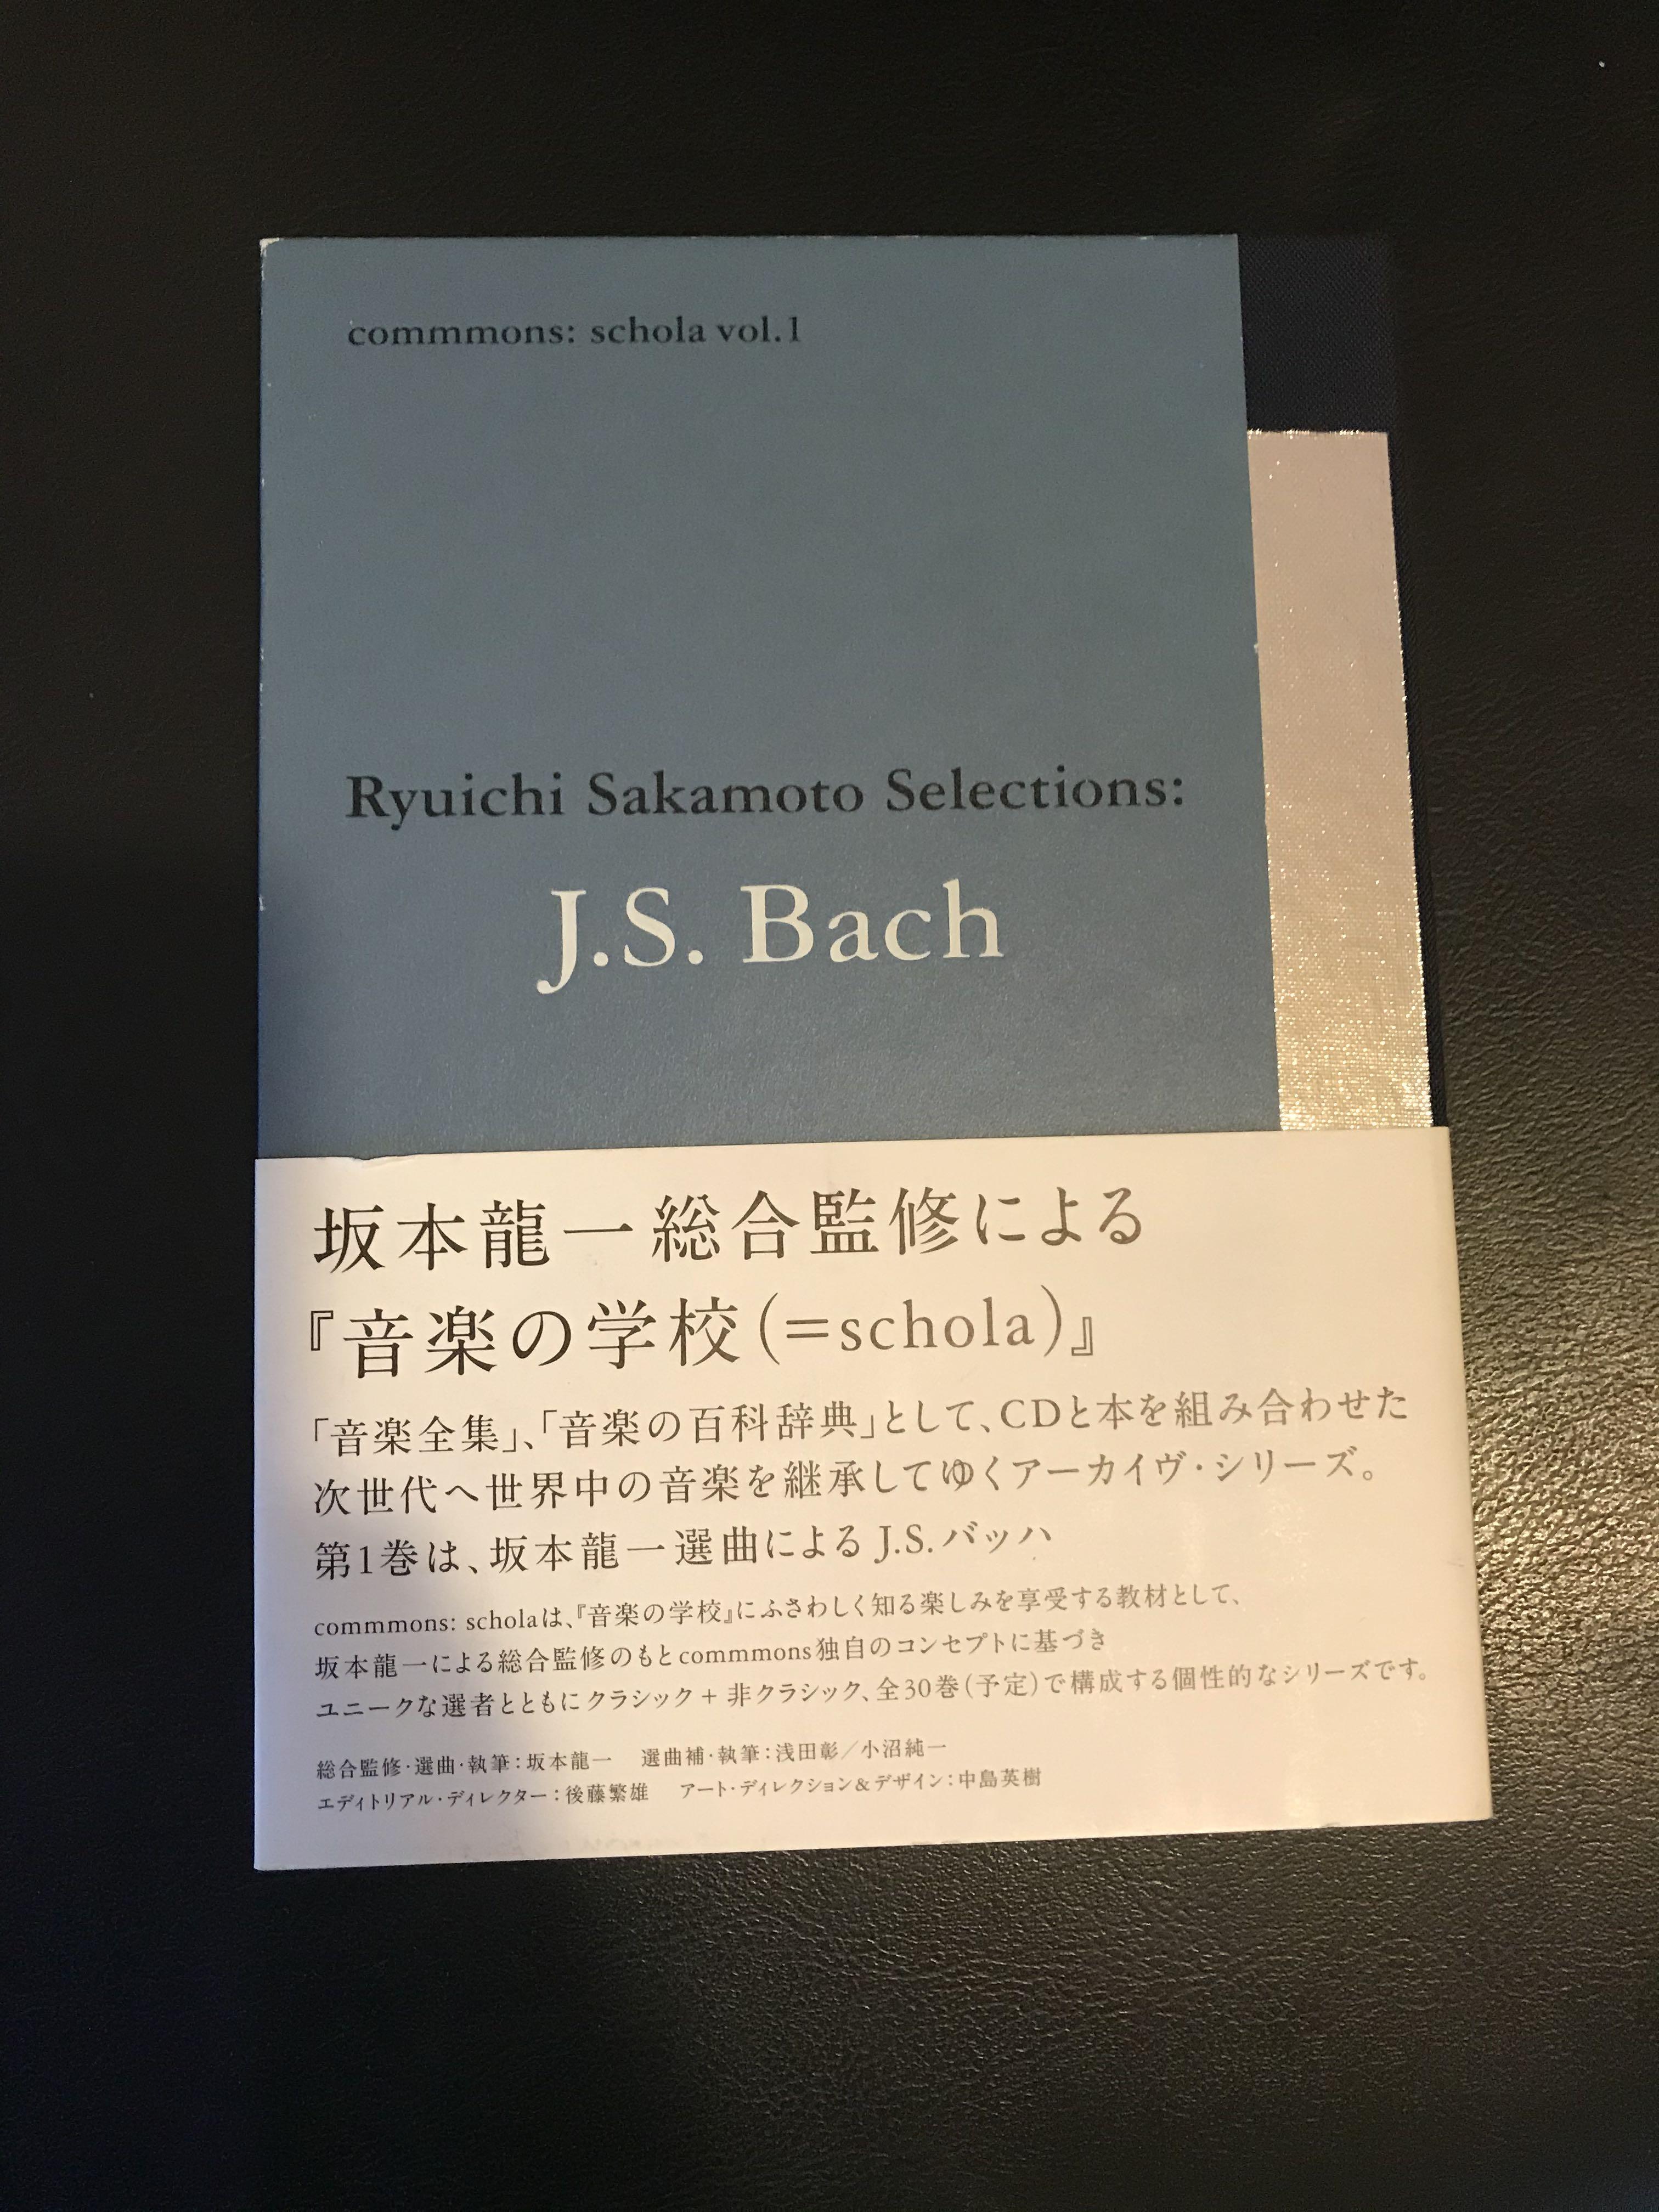 坂本龍一Ryuichi Sakamoto Selections: J.S. Bach commmons: schola 